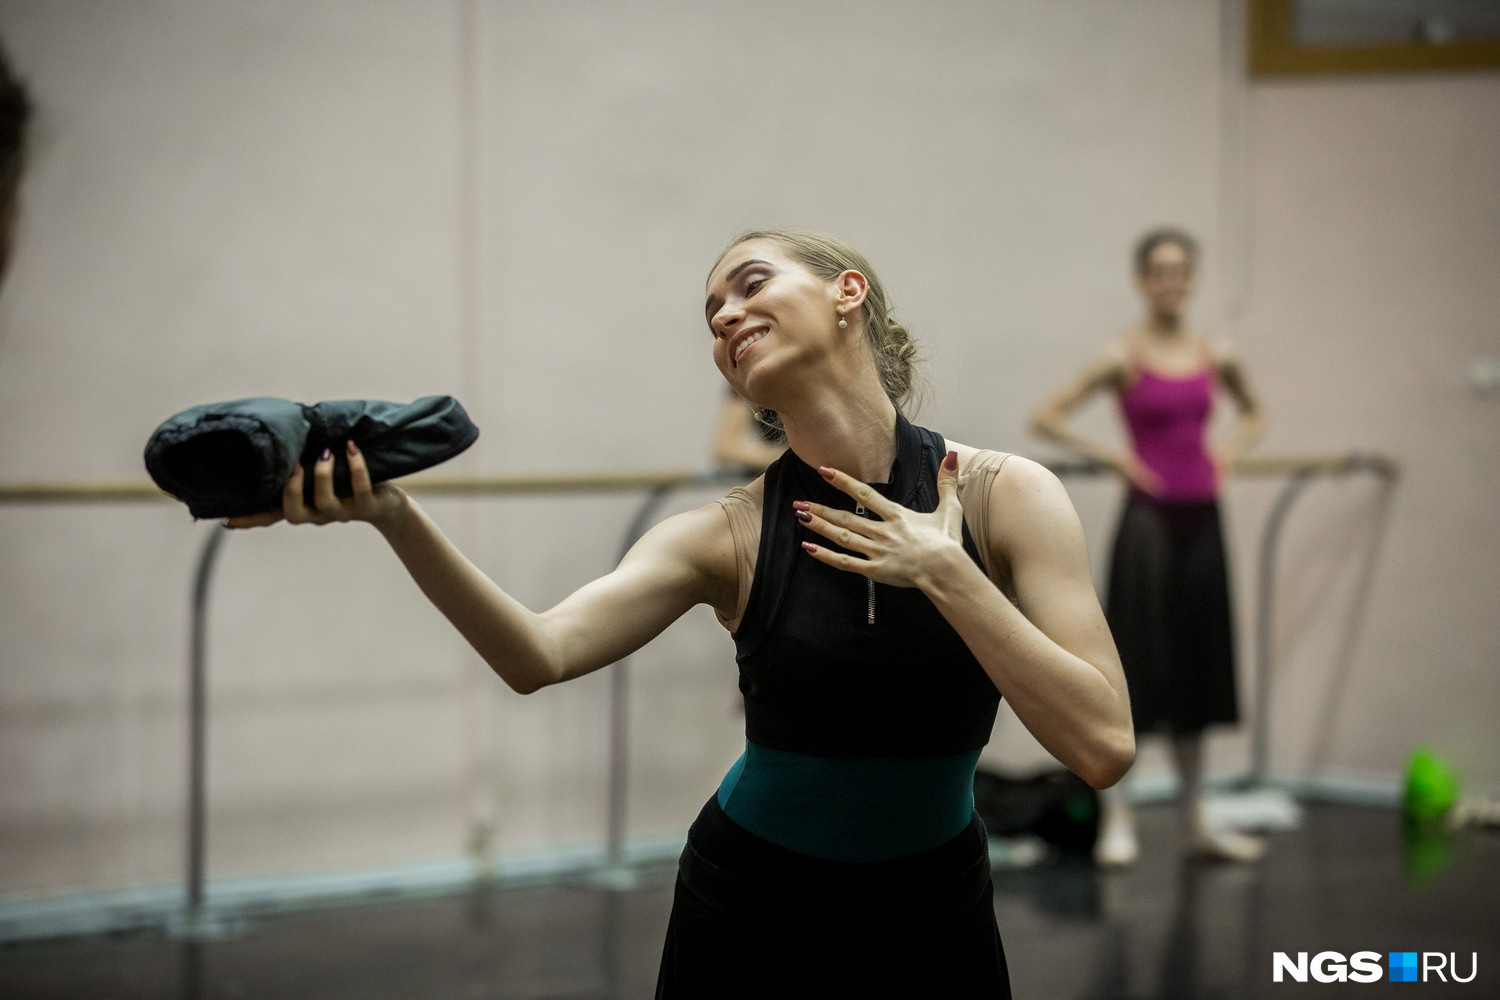 Постановщик из Санкт-Петербурга уверен, что балет понравится и детям, и взрослым